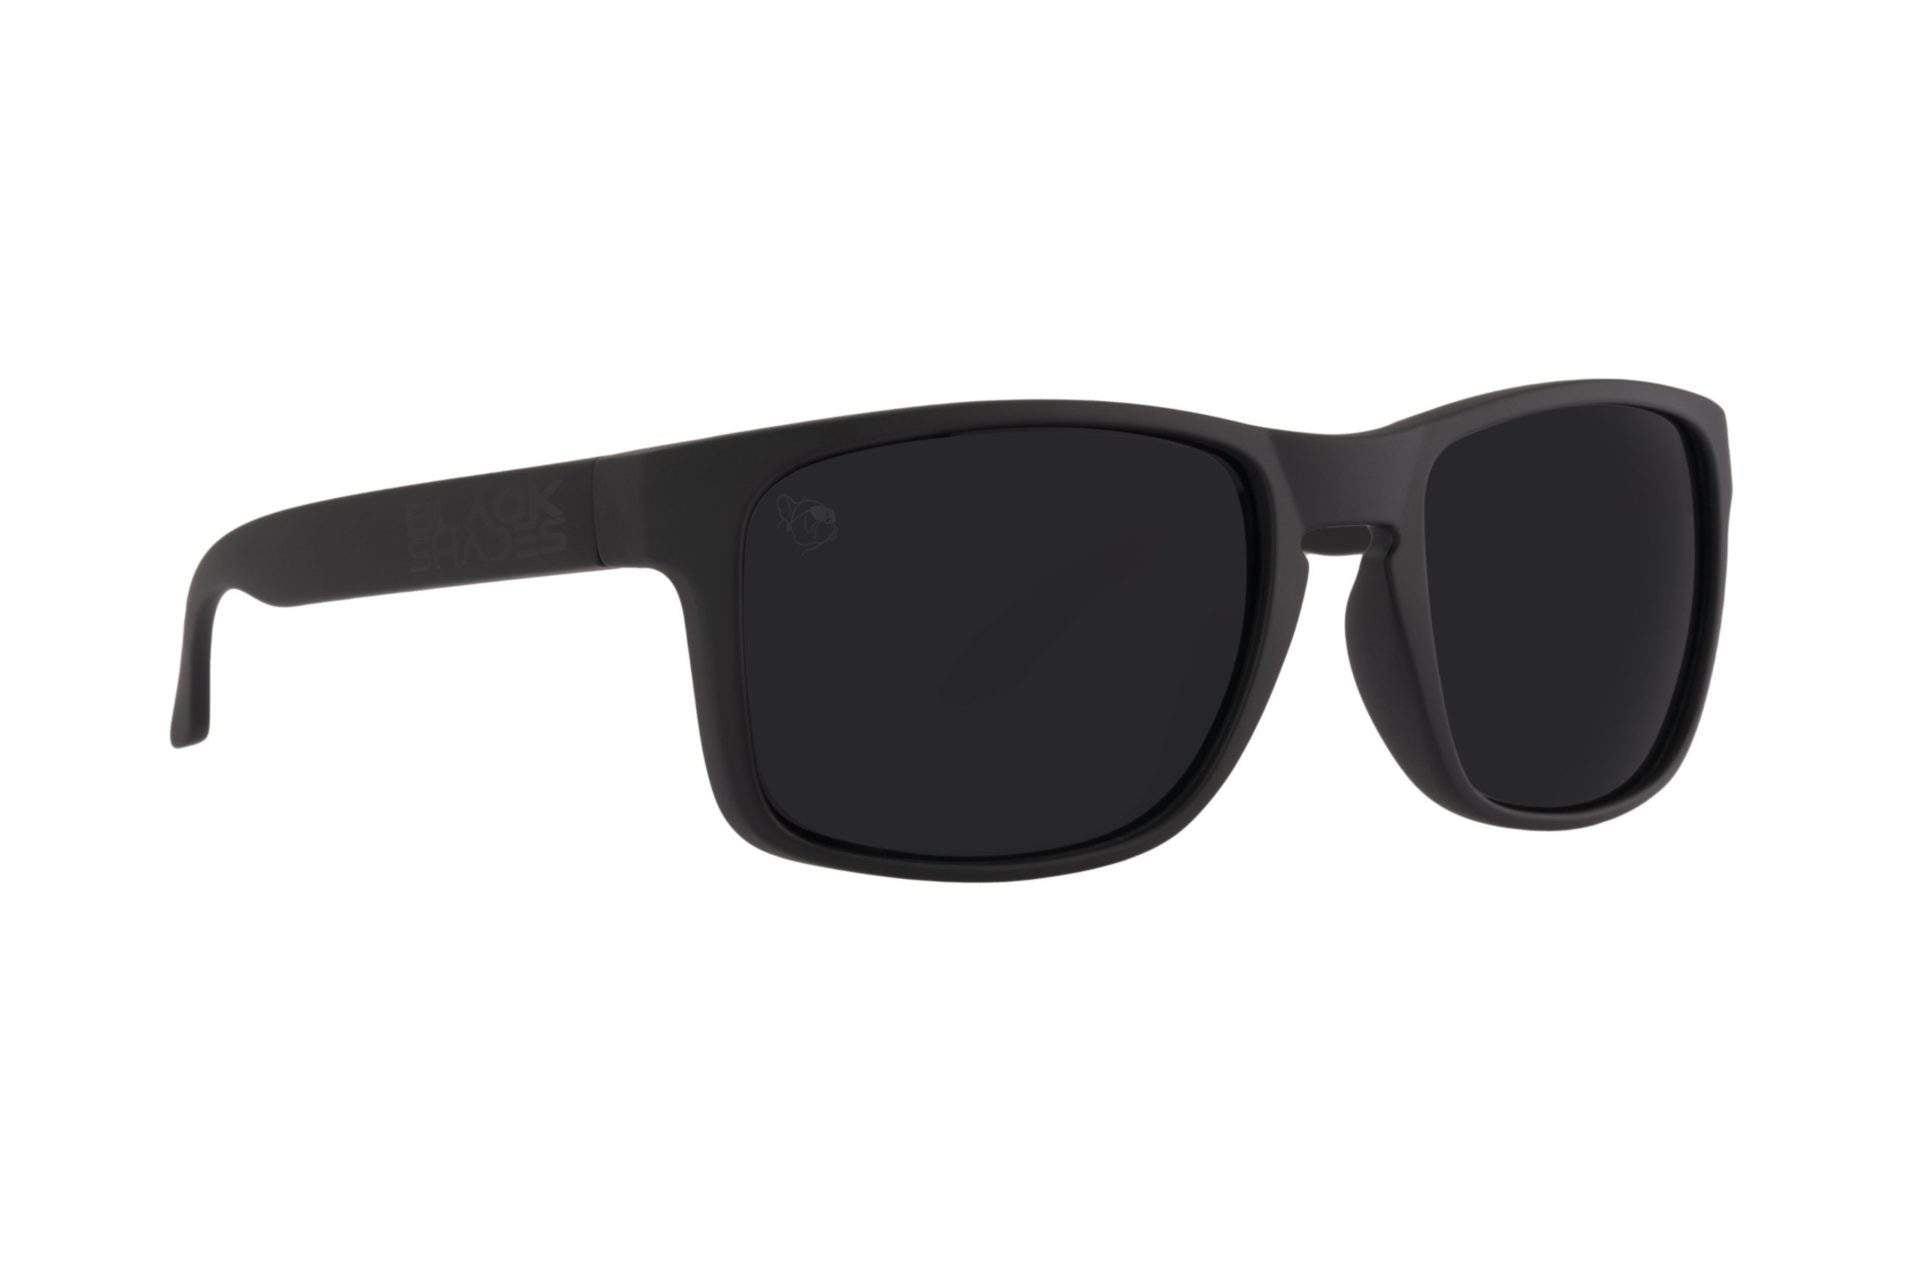 Harambe Black Polarized Sport Sunglasses | Black Shades